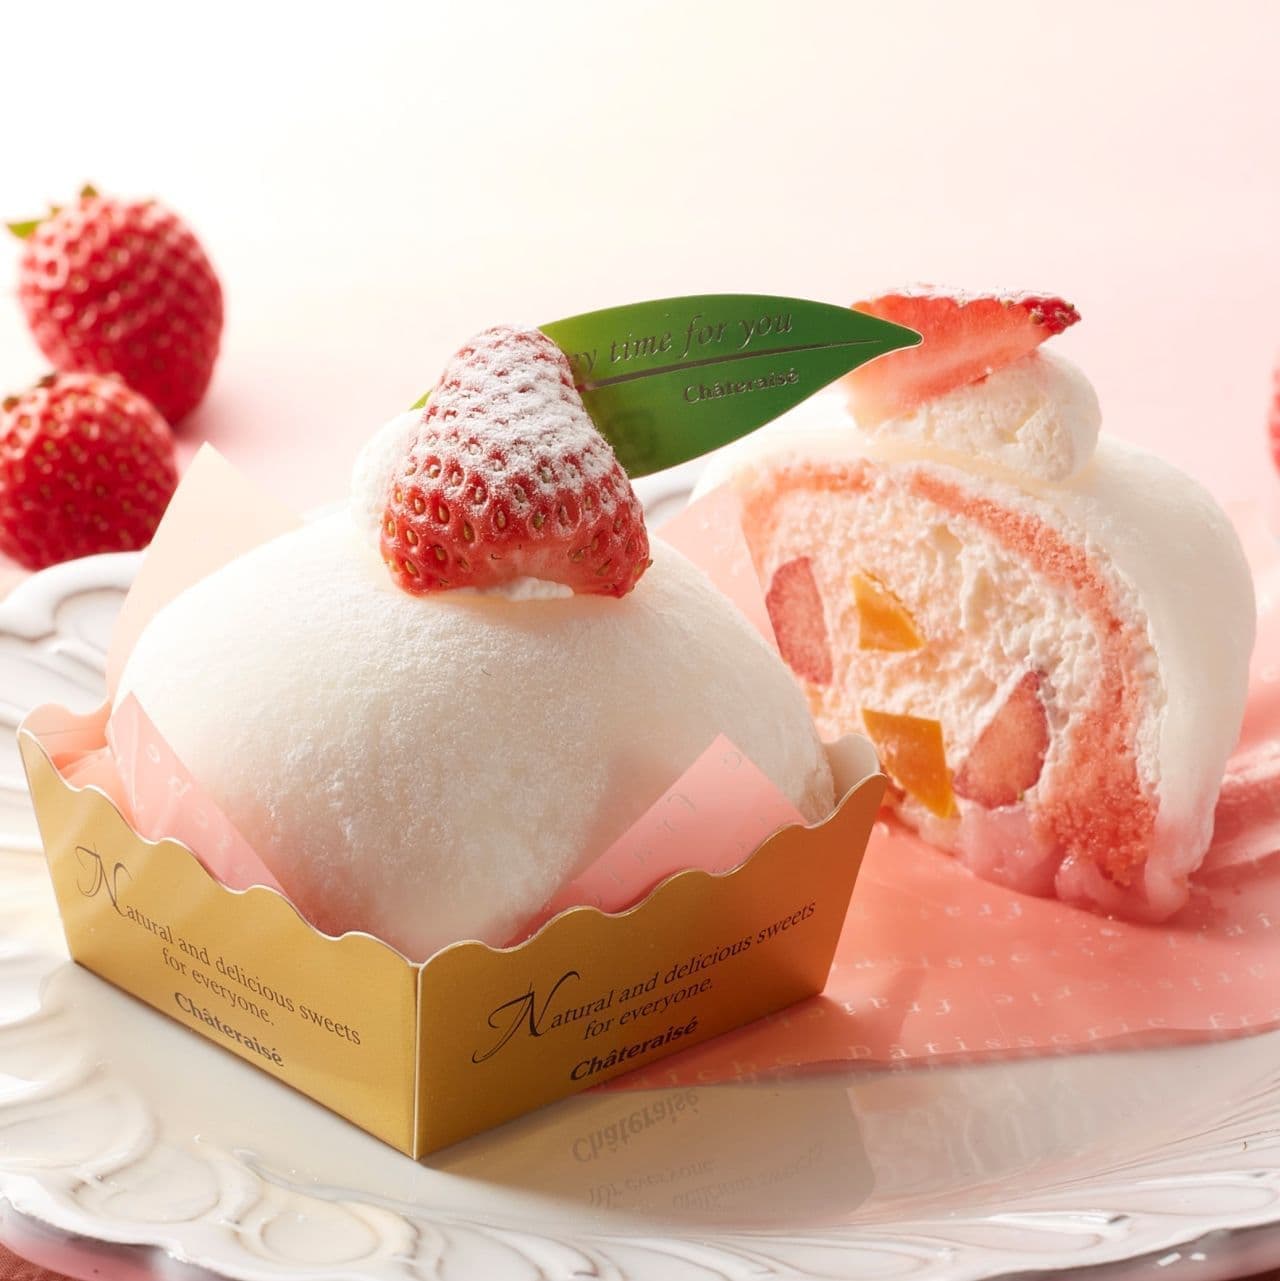 Shateraise "Strawberry Mochifuwa Cake Daifuku" using Tochiotome strawberries